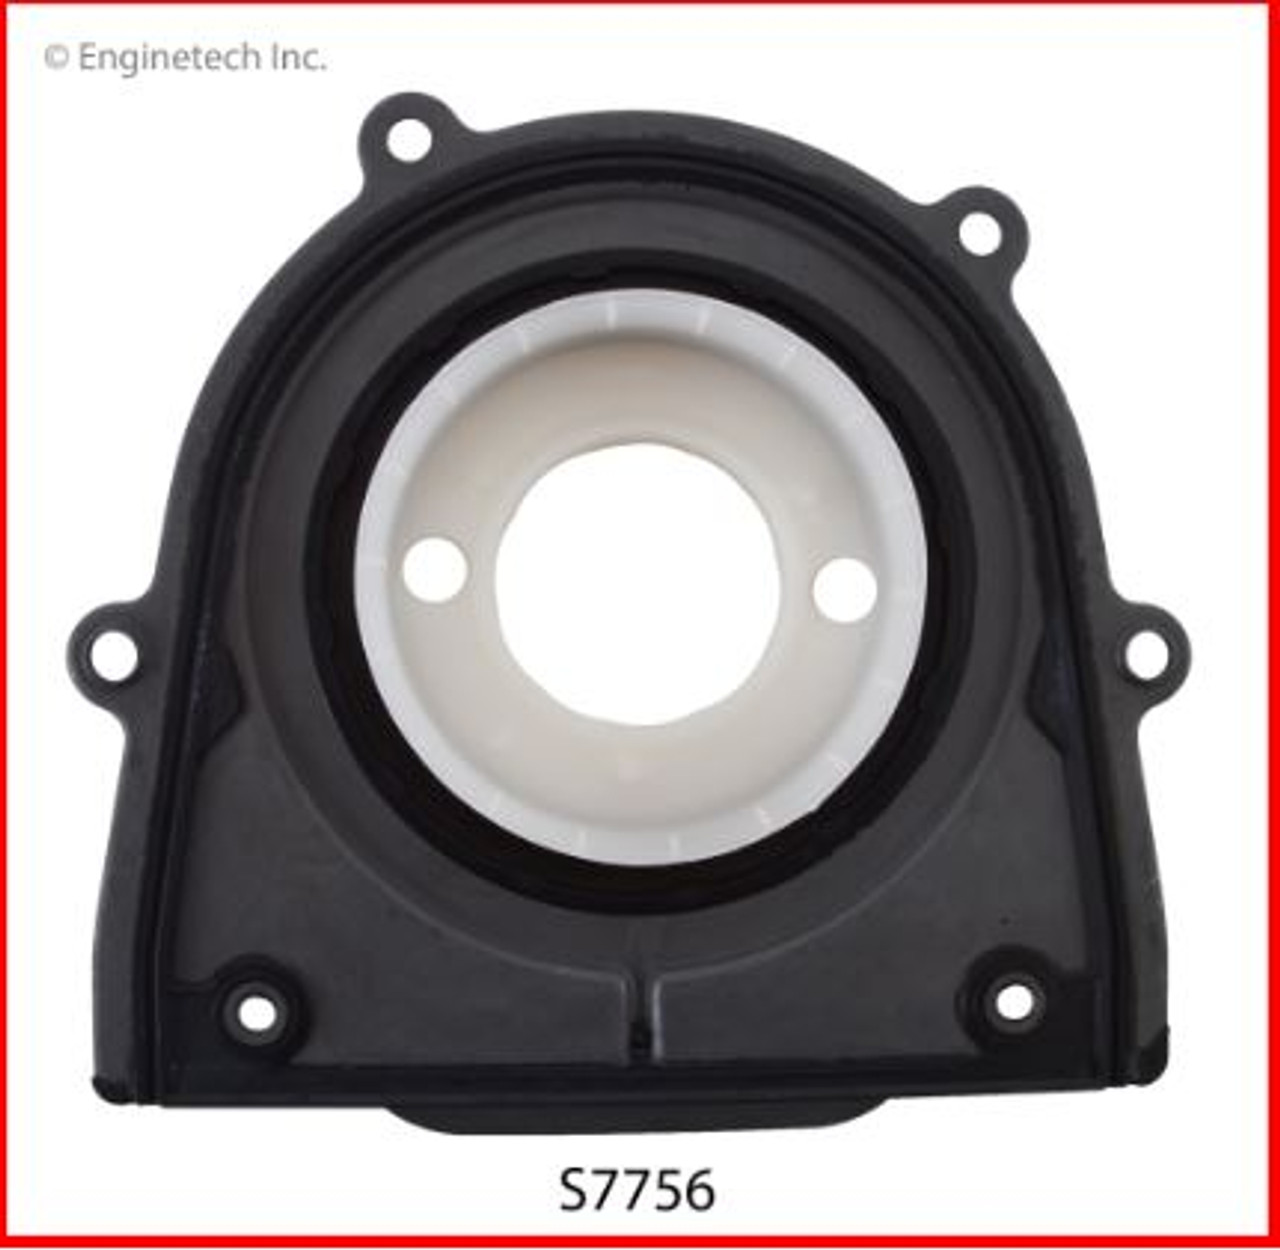 Crankshaft Seal - 2009 Mazda 6 2.5L (S7756.J95)